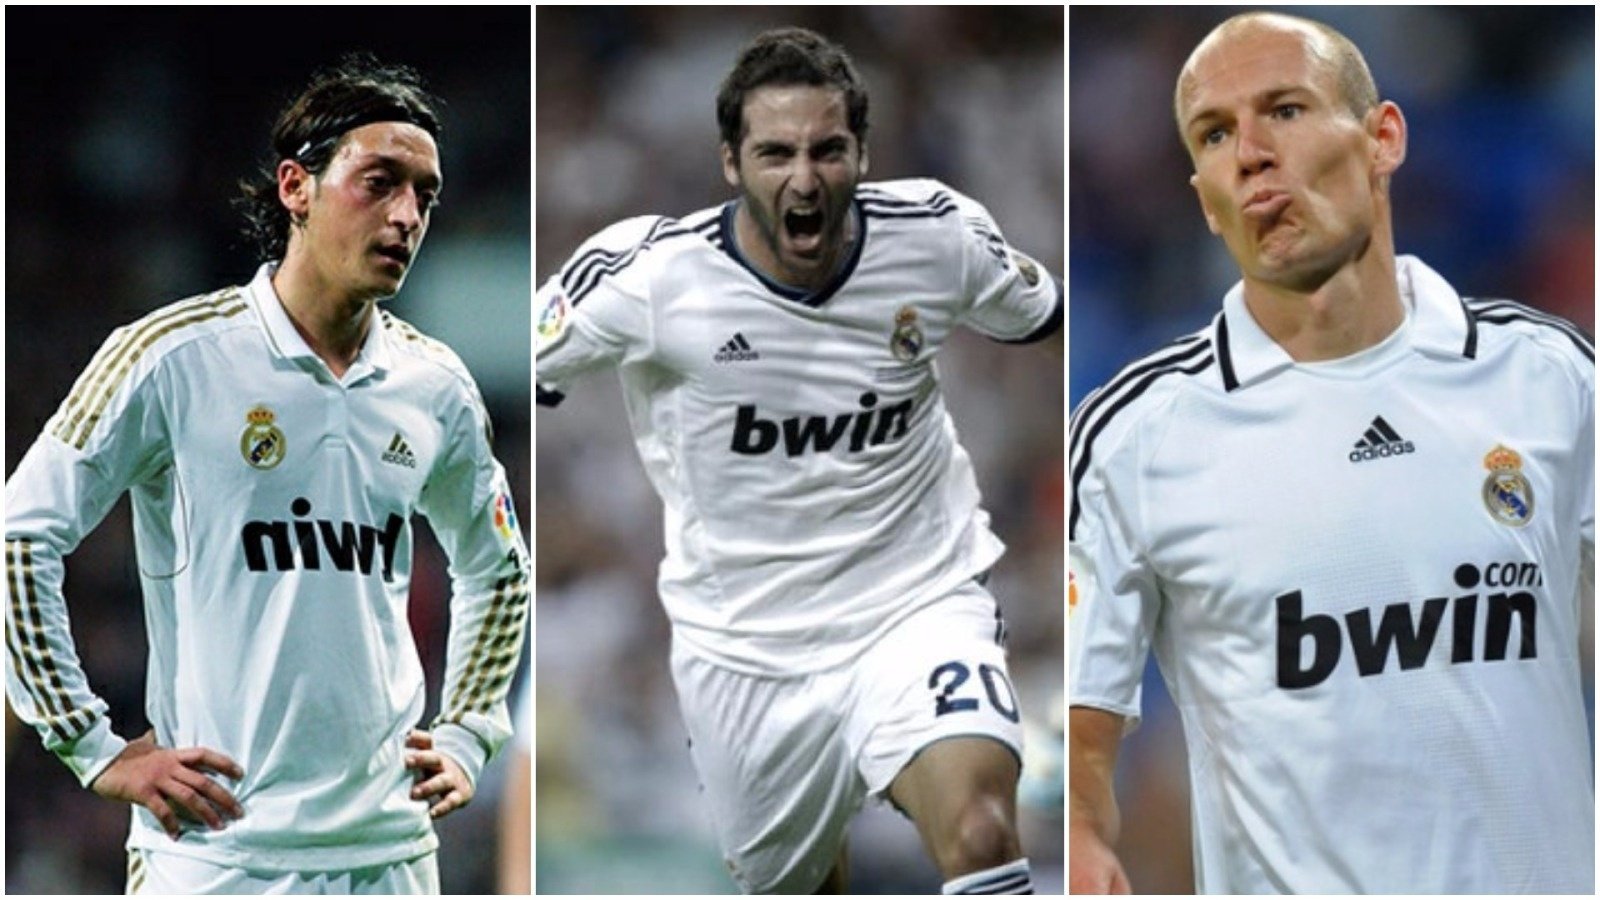 Por qué los jugadores del Real Madrid se huelen la playera?